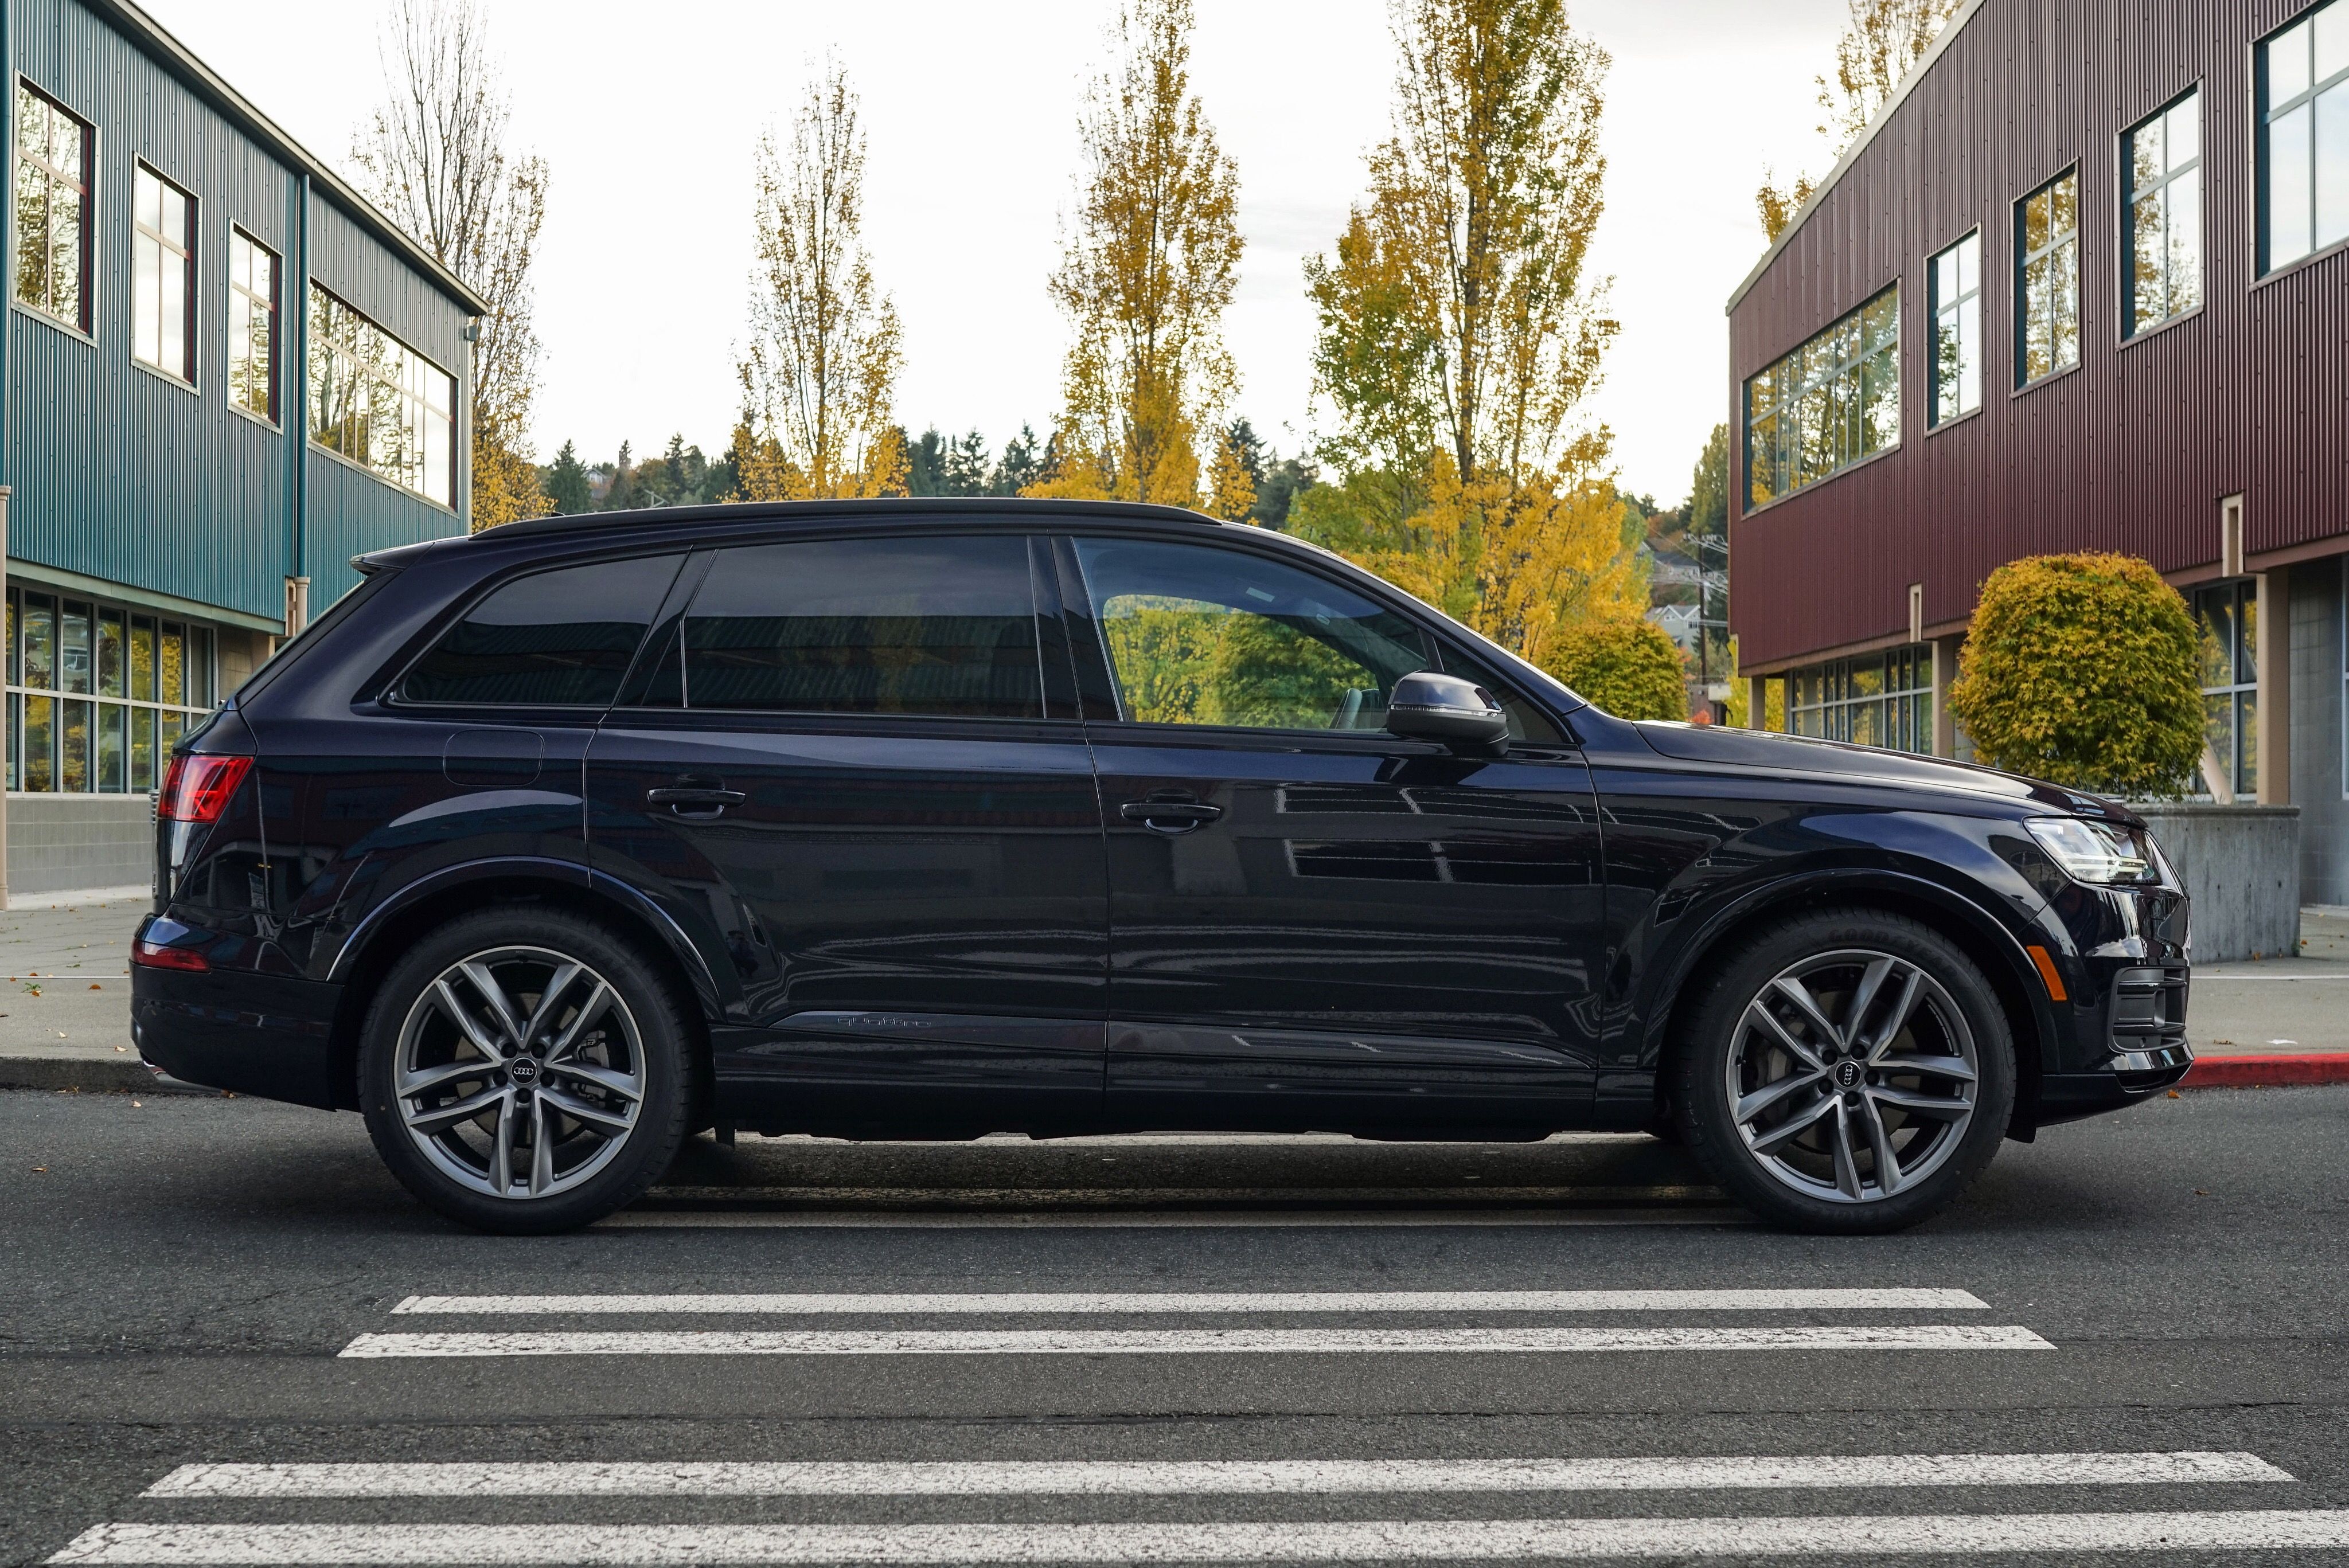 Audi Q7 exterior model